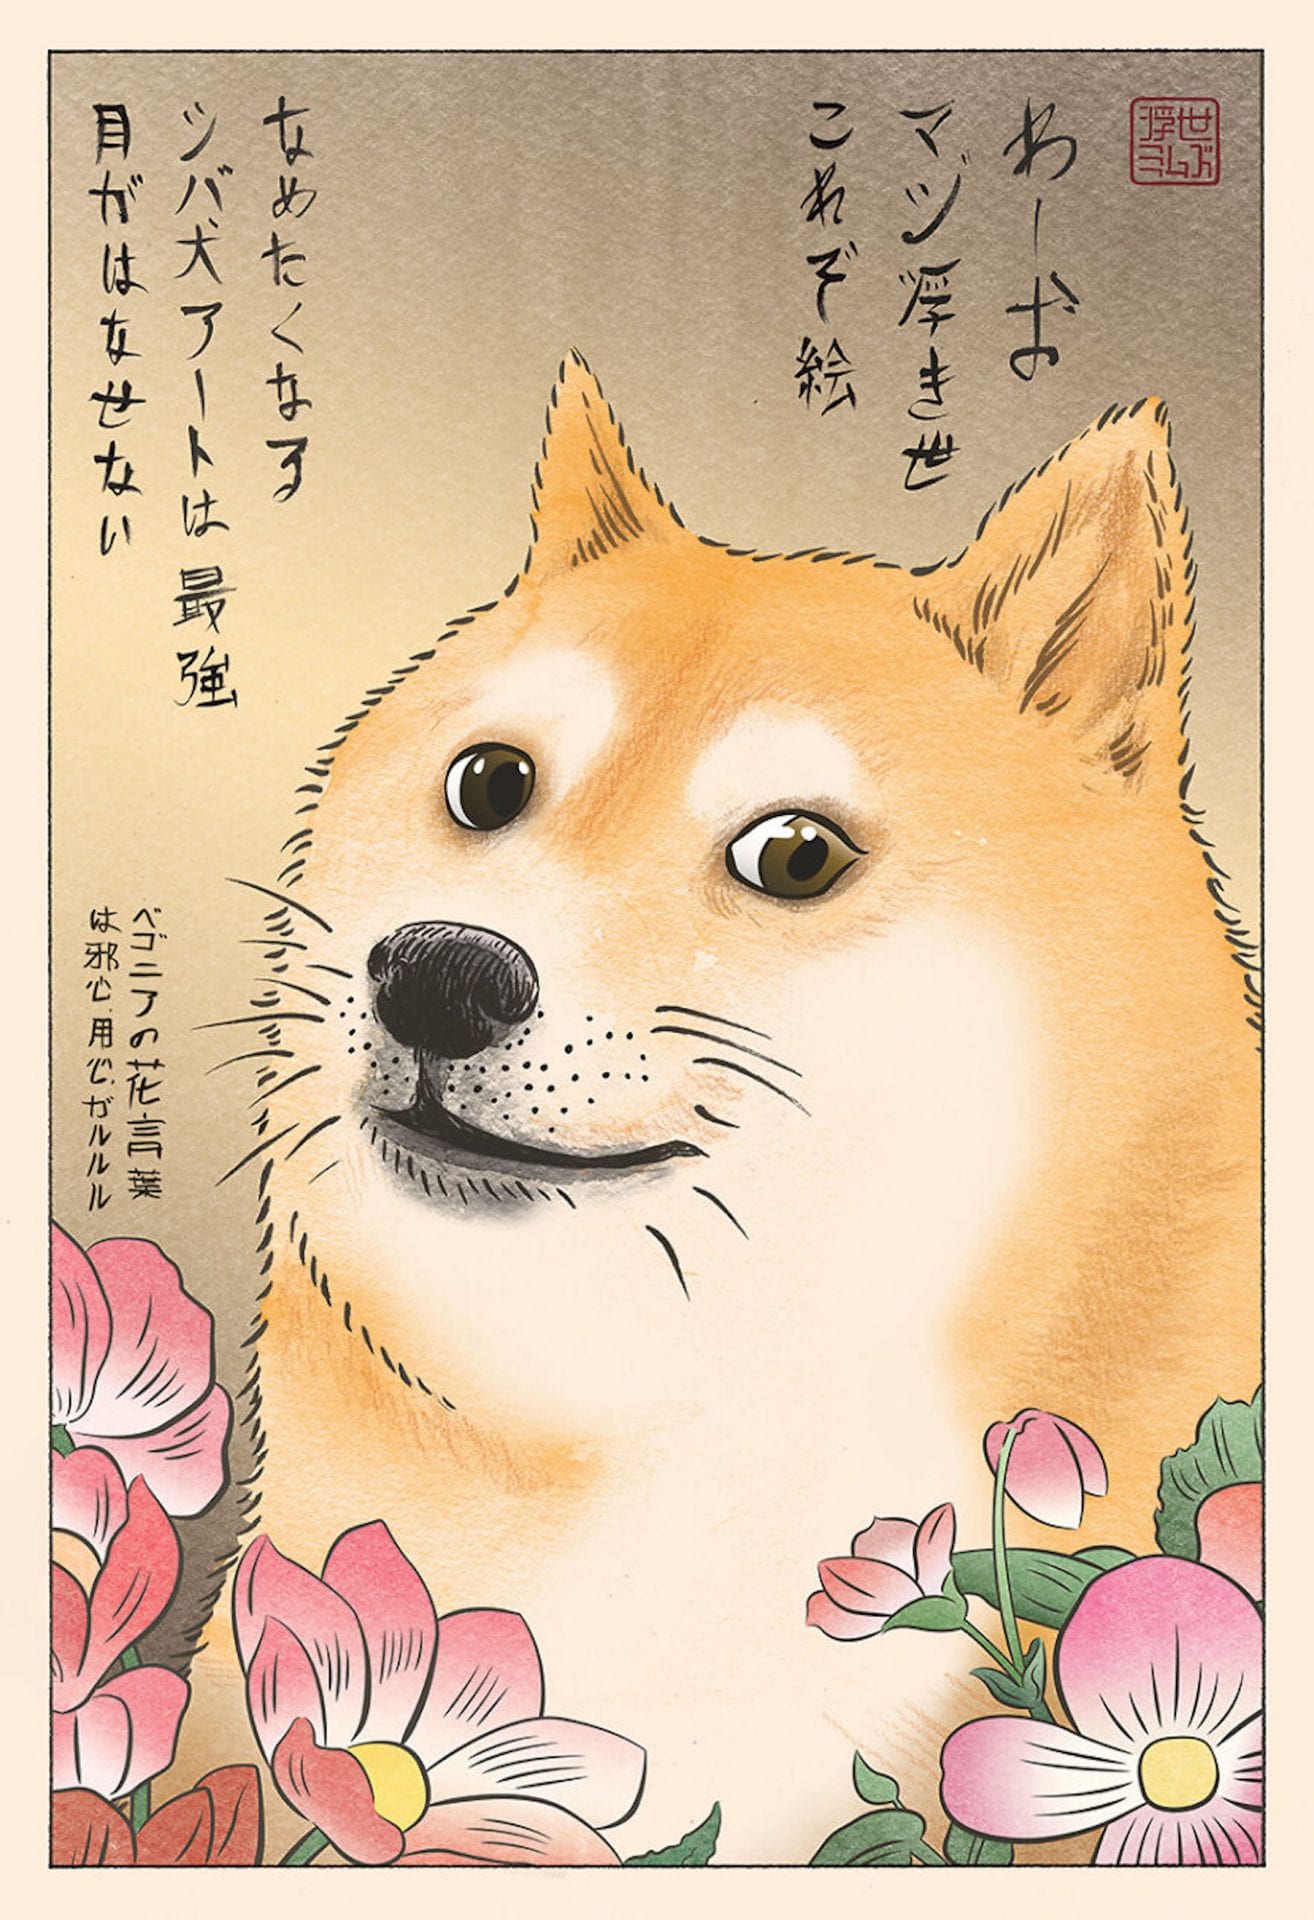 L'artiste Ukiyo Memes transforme les mèmes internet en estampes japonaises